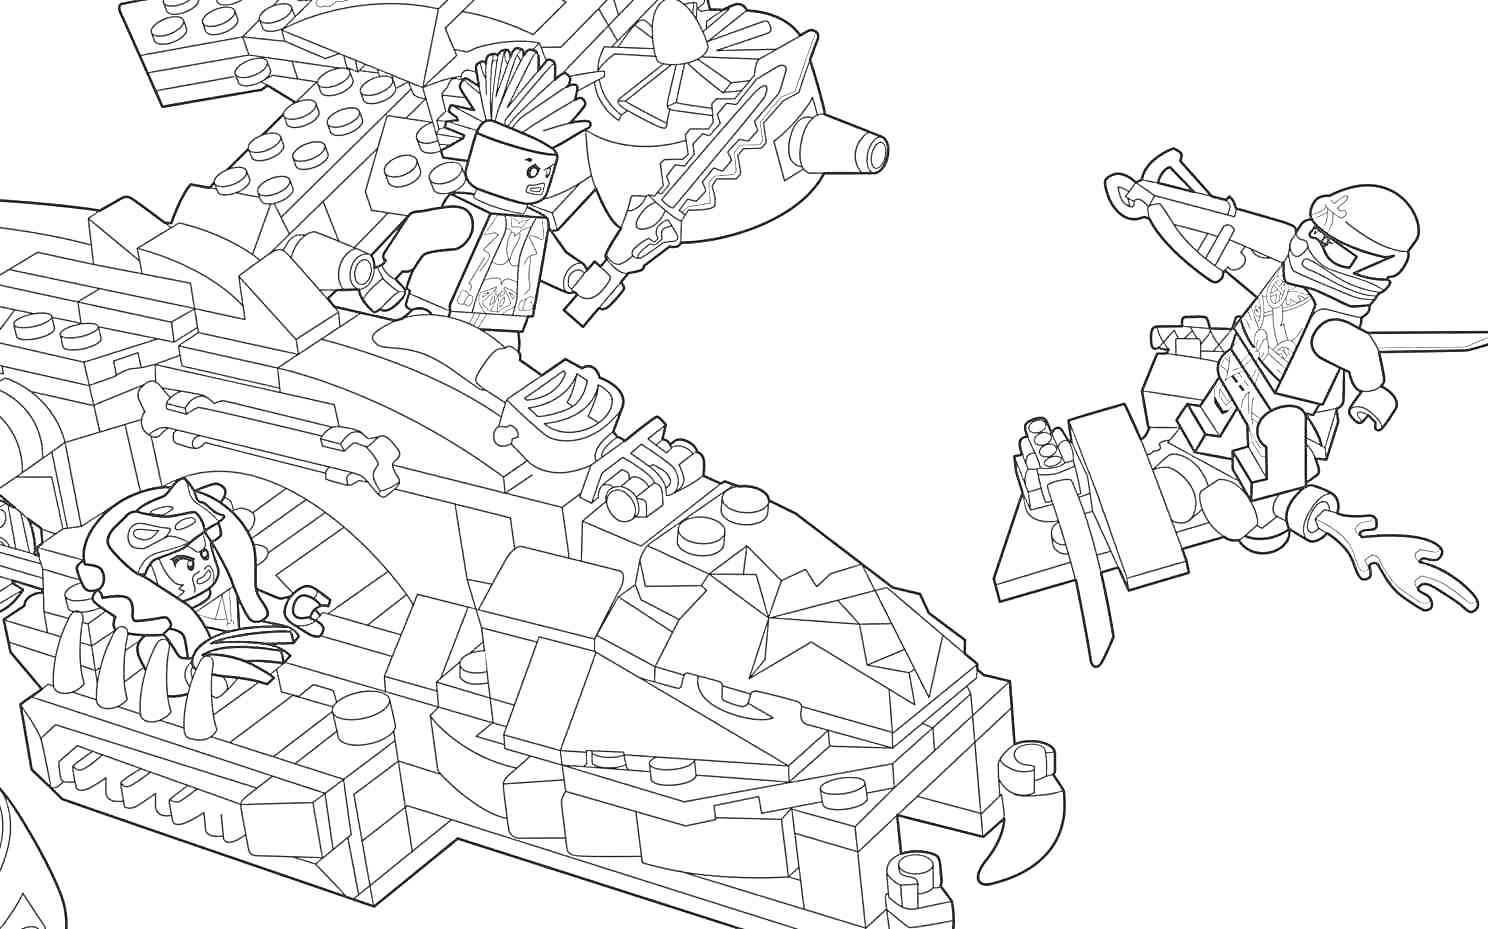 Лего-сцена с вертолетом и двумя минифигурками, одна из которых находится в вертолете, а другая летит на ранце с огнем